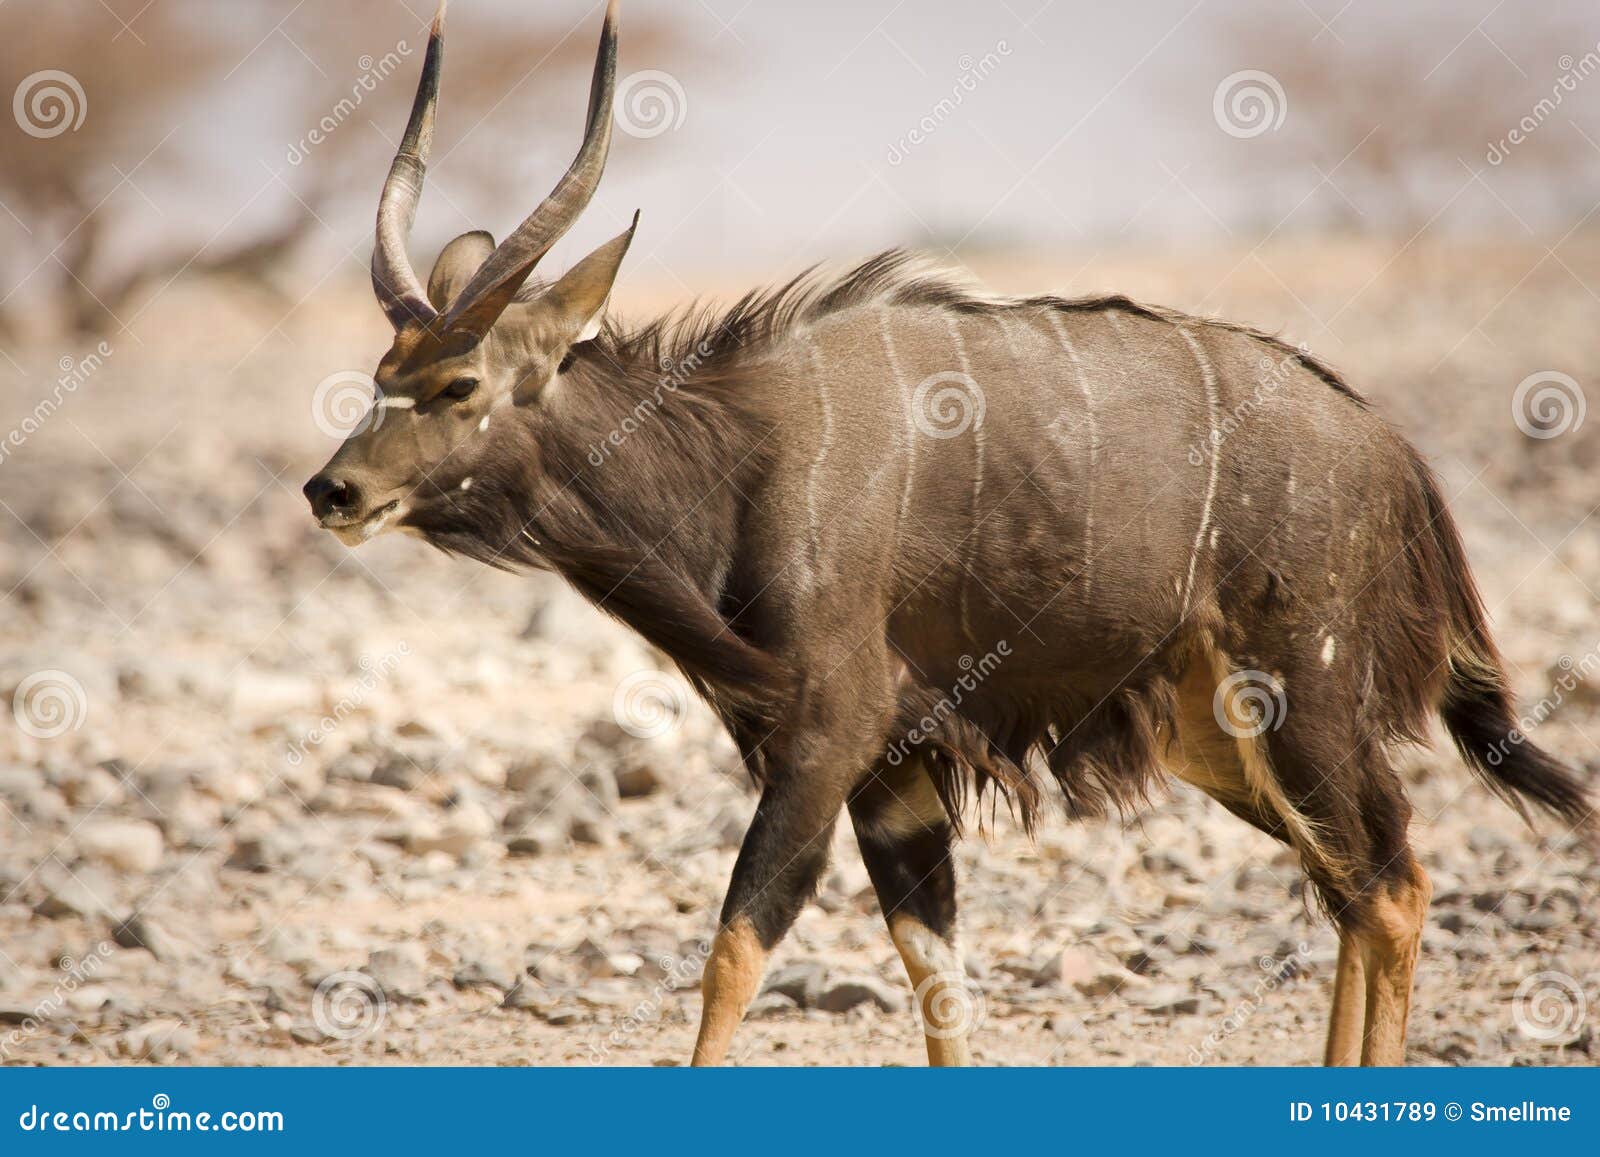 nyala antelope on desert